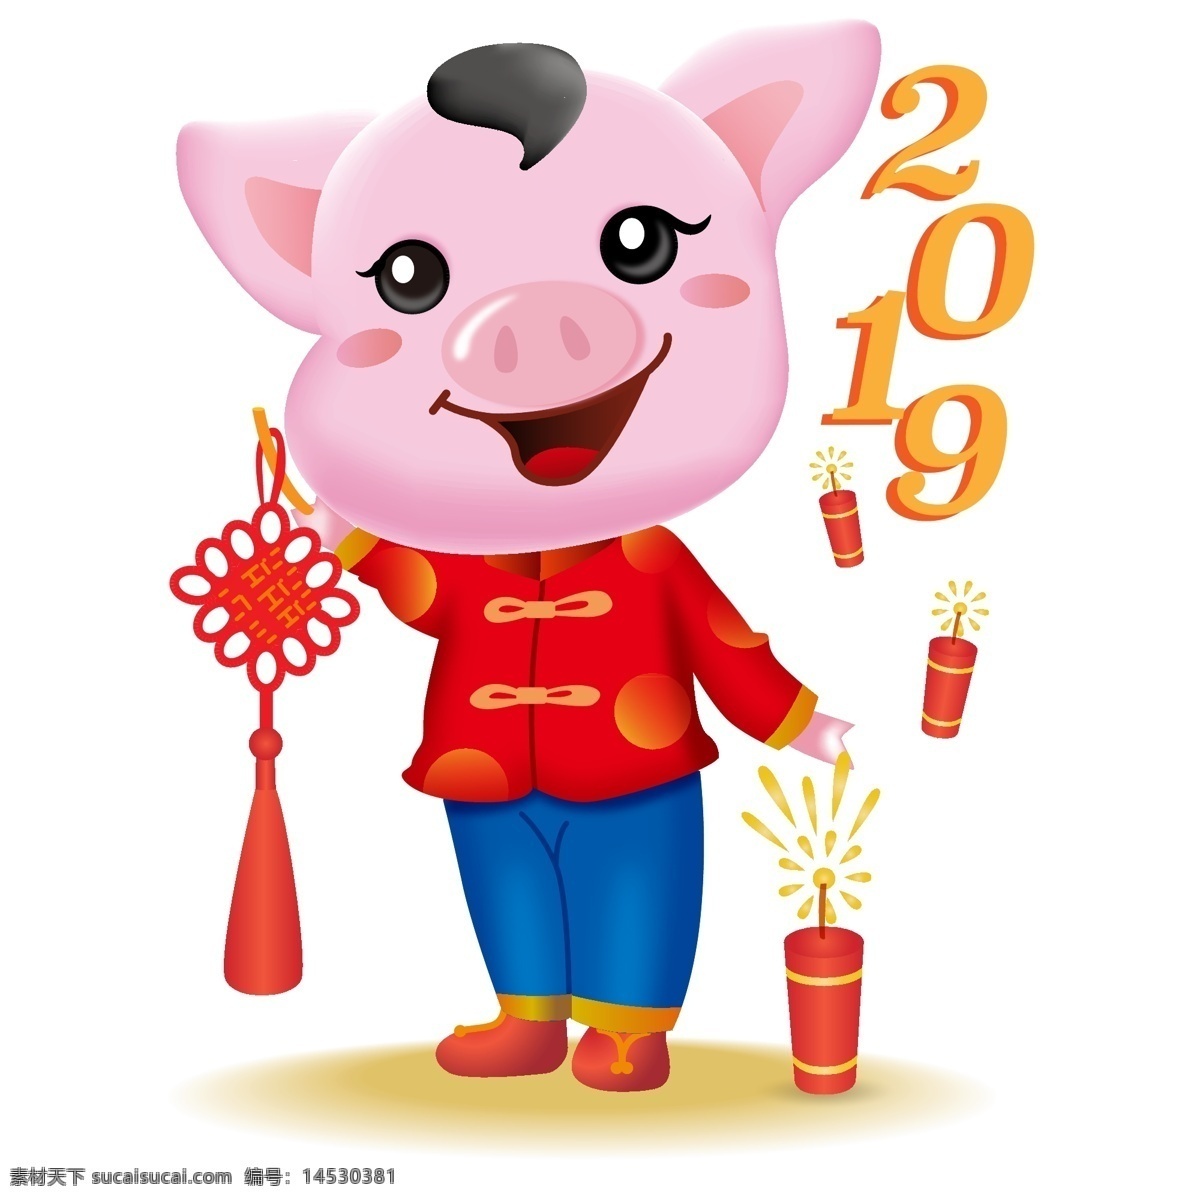 新年 可爱 猪 立体 ip 卡通 形象 喜庆 插画 春节 吉祥物 立体猪 猪ip 炮竹 2019 吉祥结